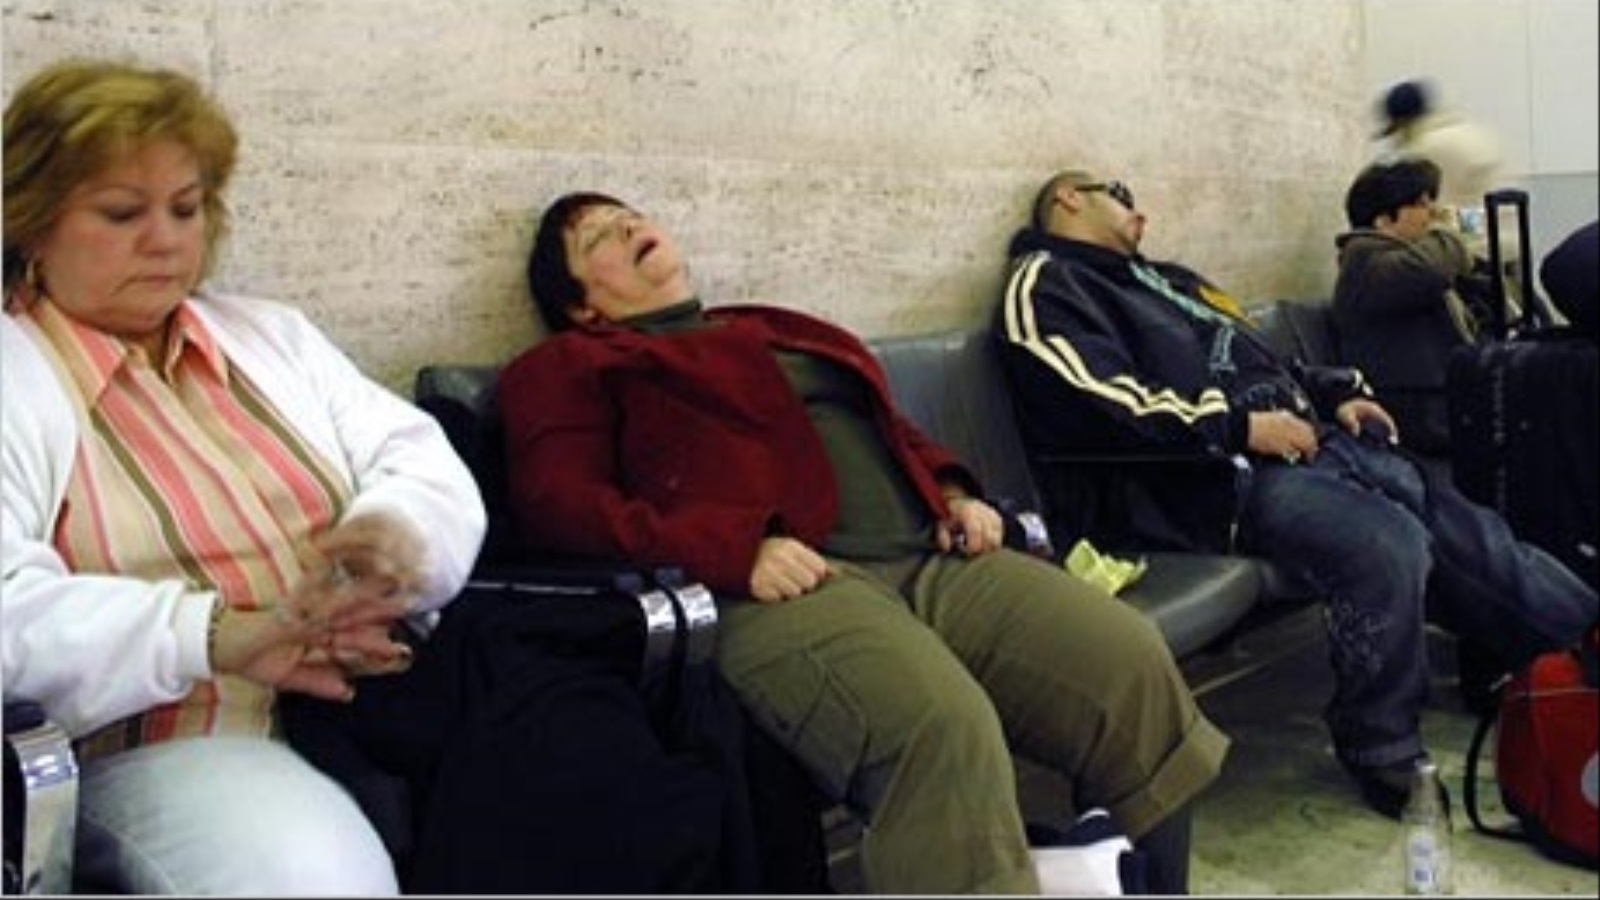 انتشرت صور عديدة وقت الأزمة للركاب وهم نائمون في المطارات مع تعطل حركة السفر